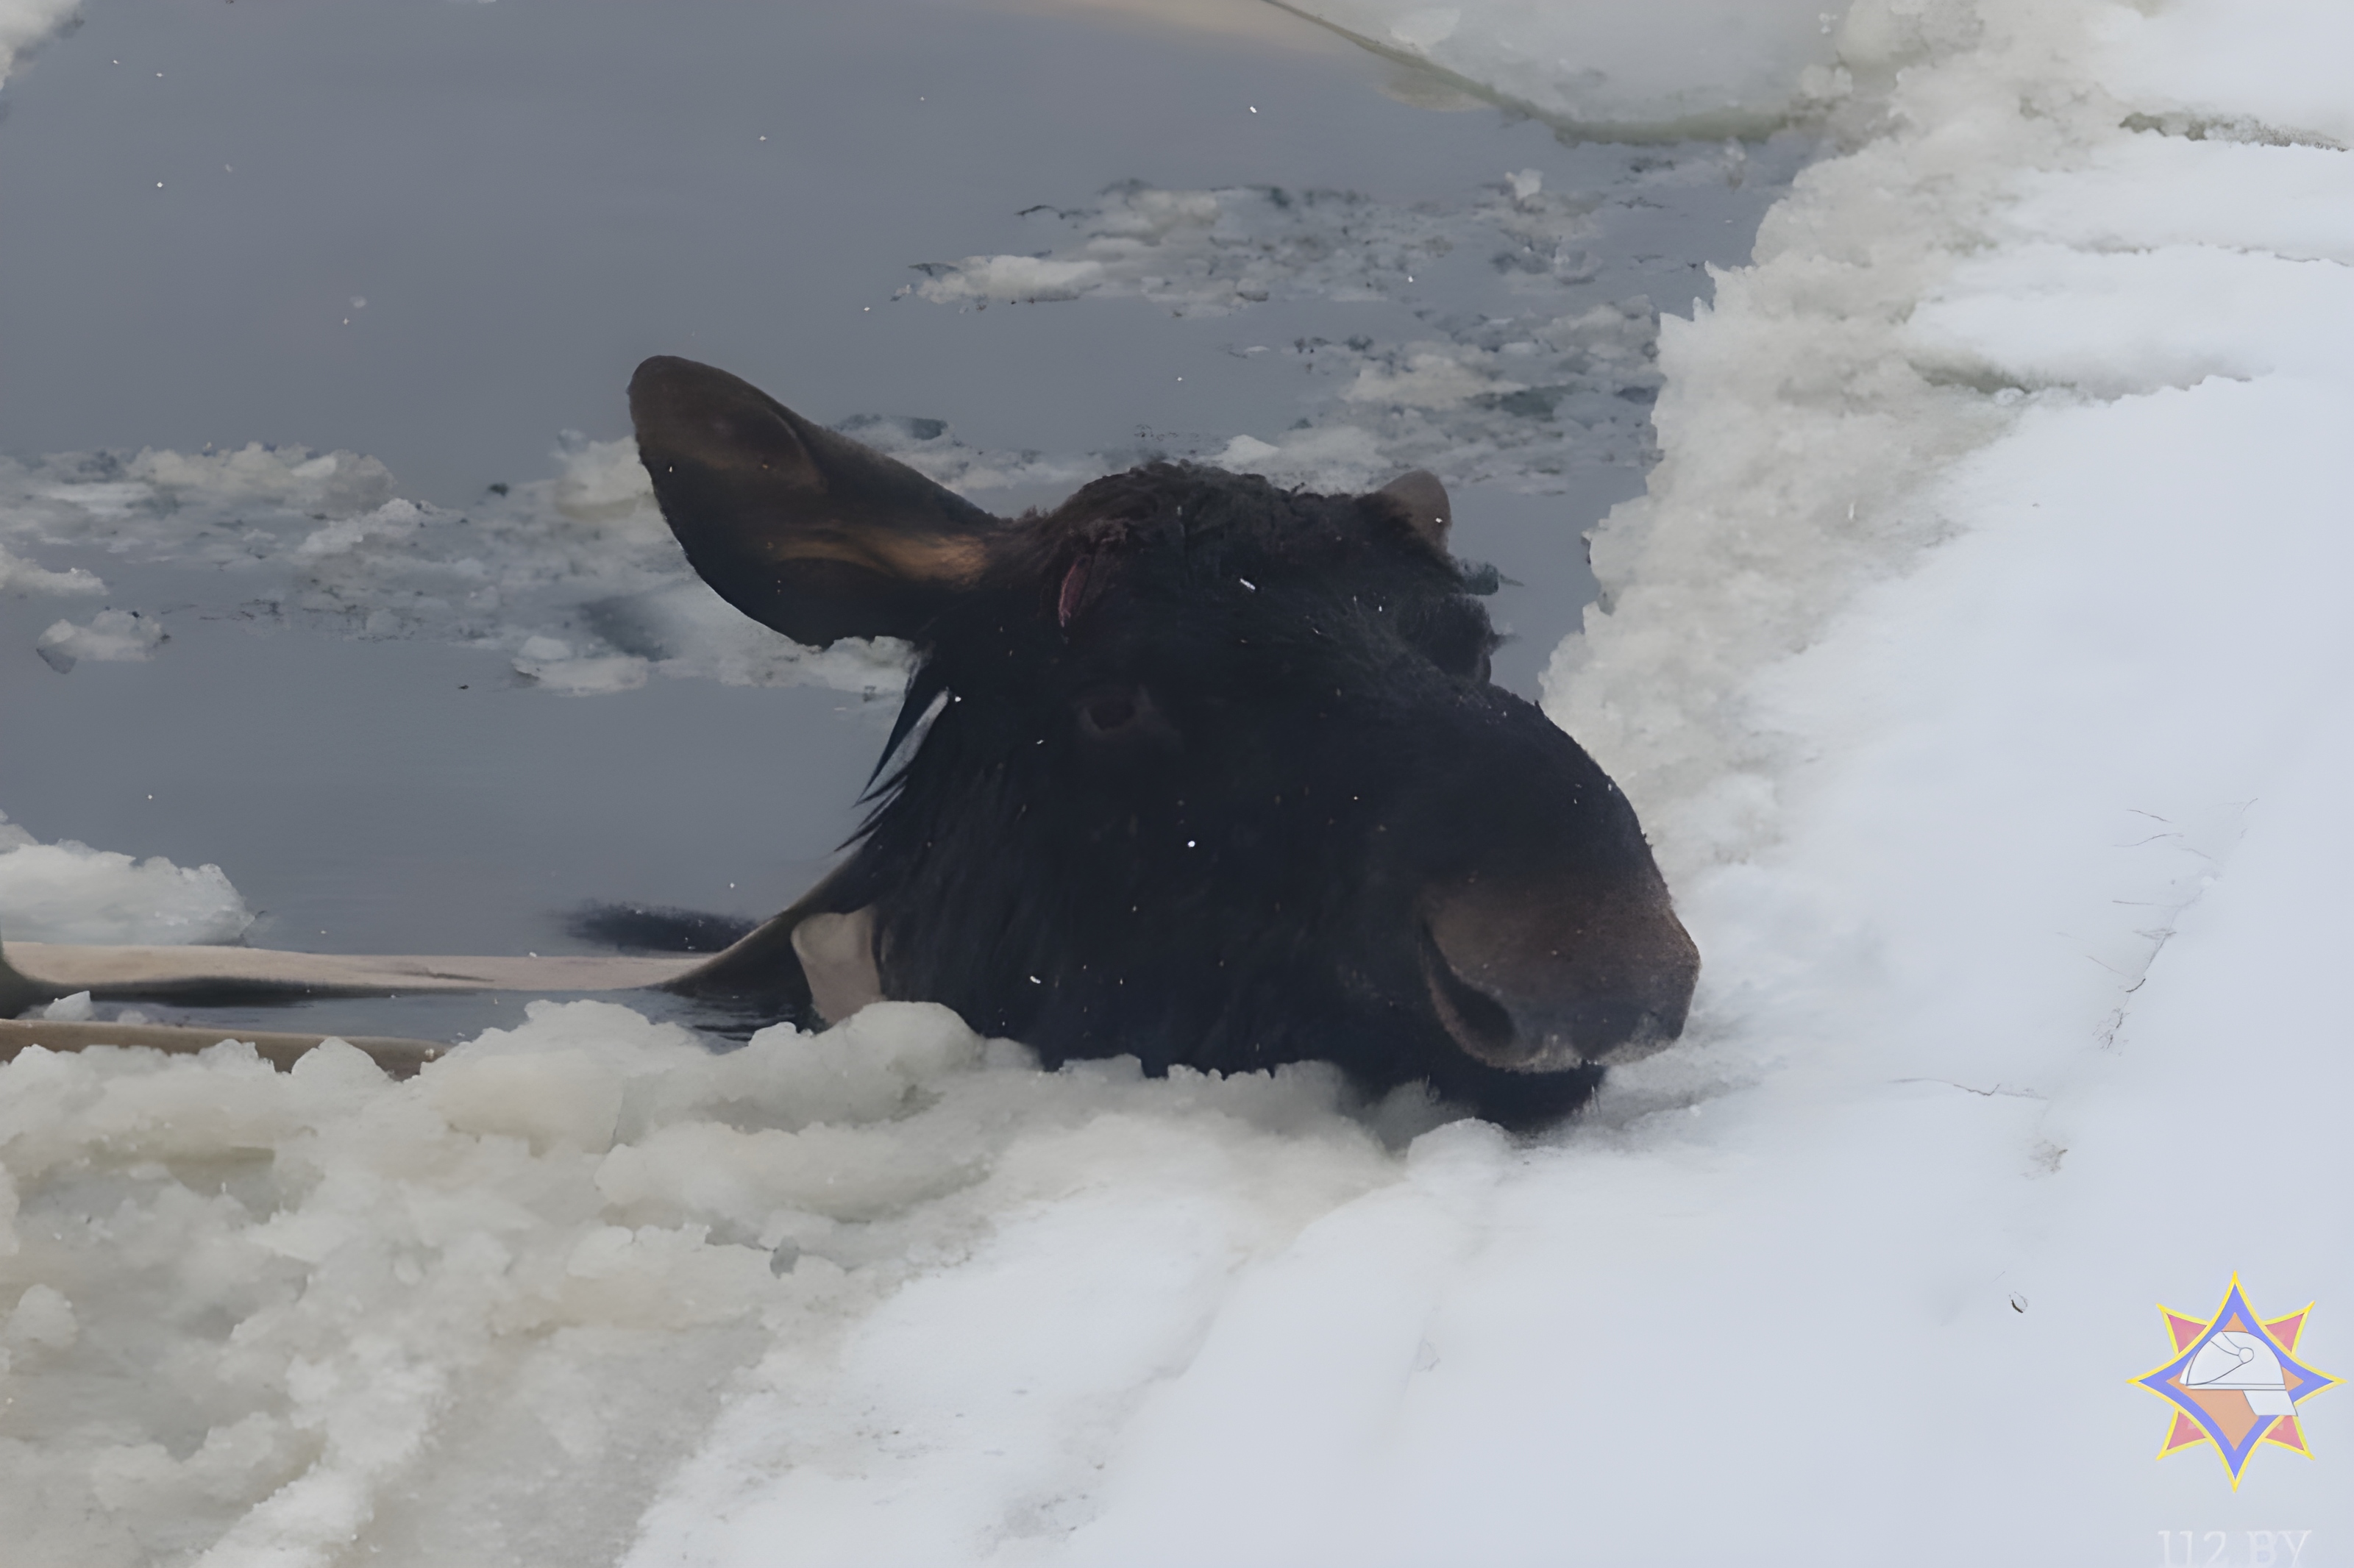 Лось провалился под лед в Миорском районе, чтобы его спасти потребовалась помощь пожарных. Видео